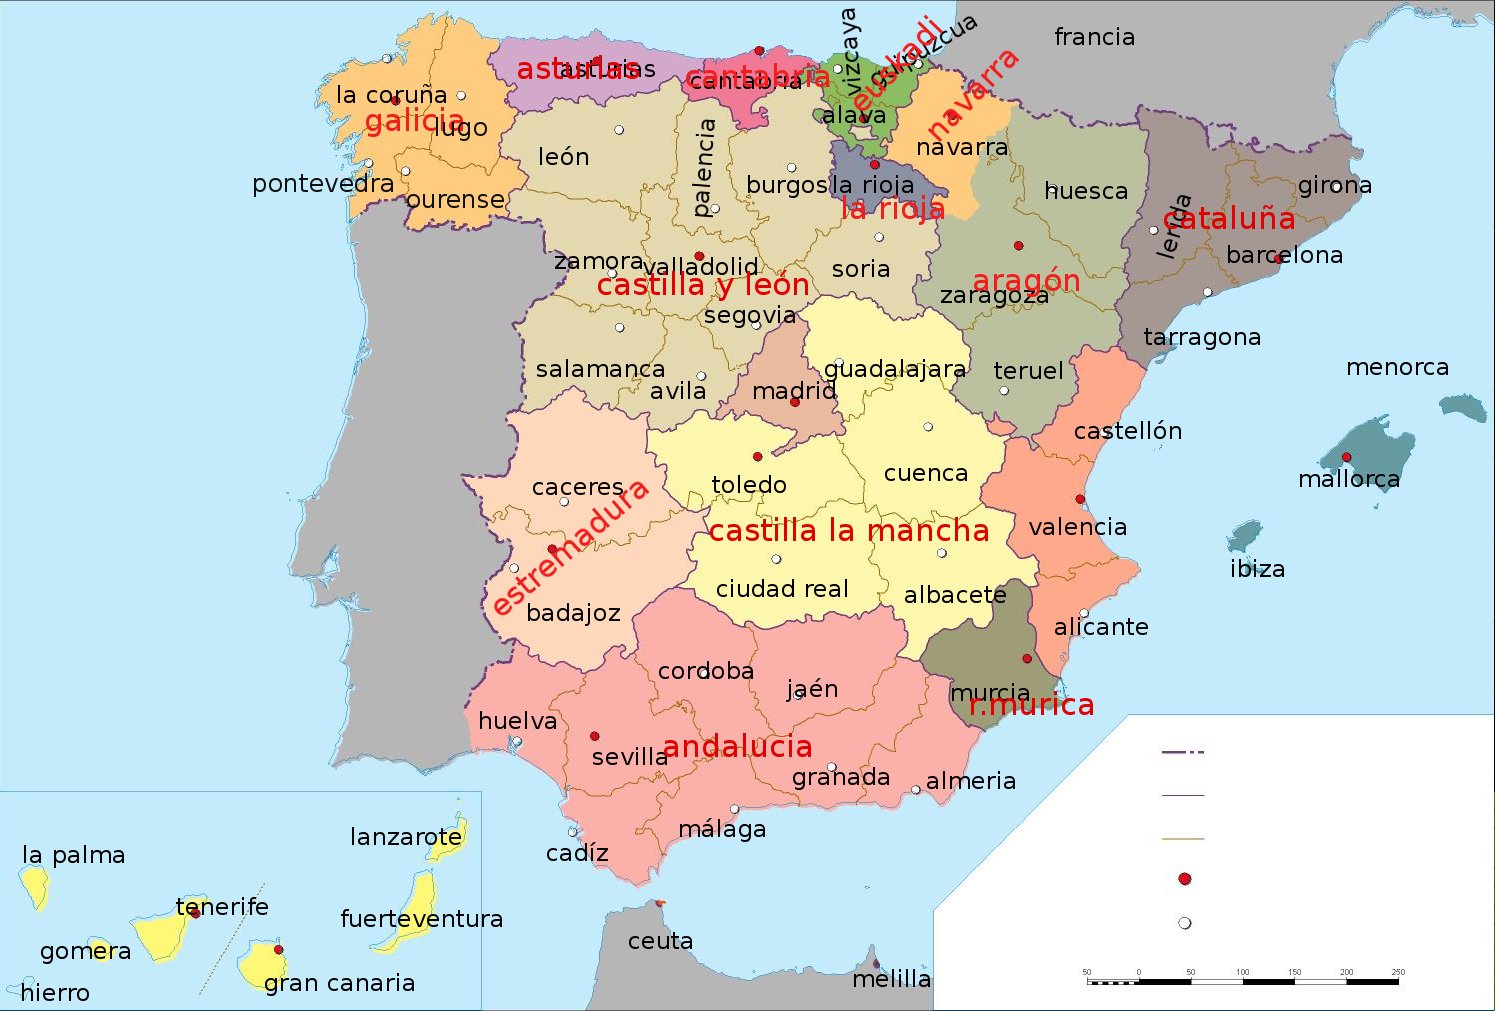 GermanTecno: Mapa De España